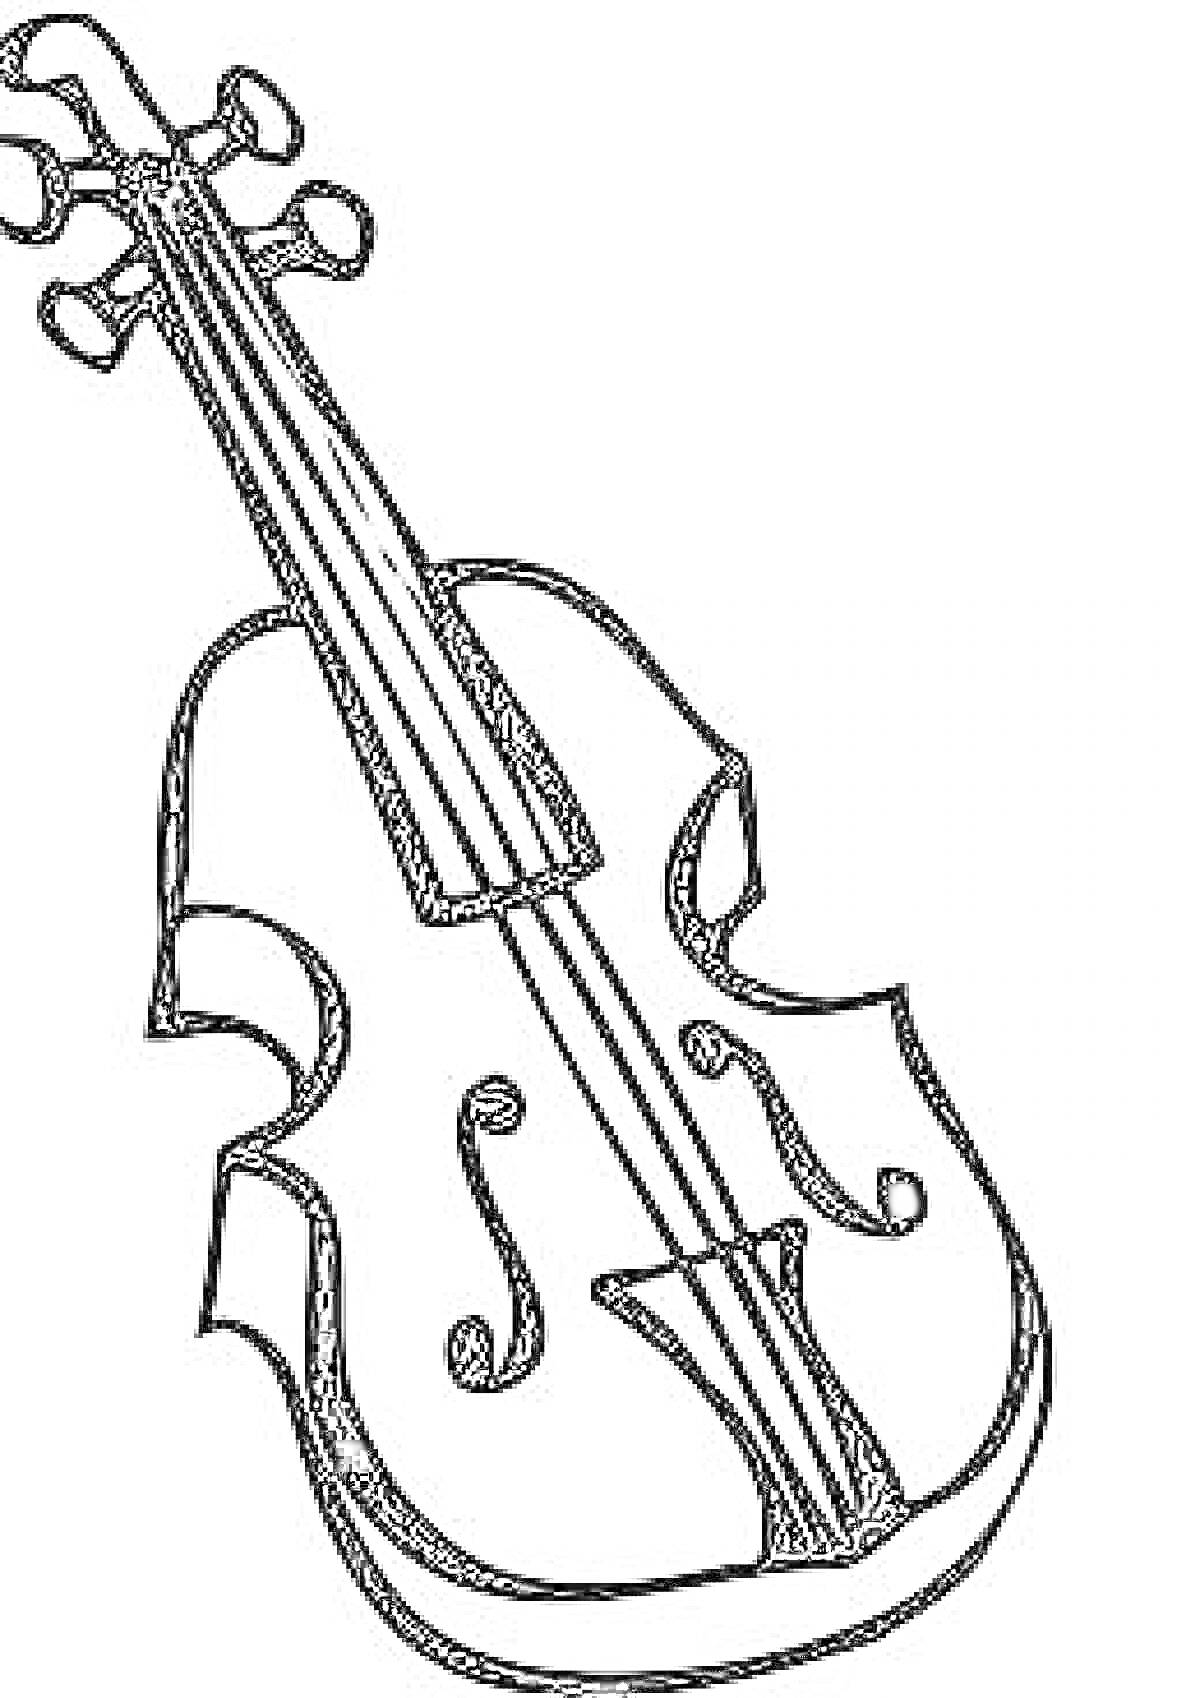 Скрипка, изображение контурного вида скрипки с колками, подставкой, струнами и корпусом